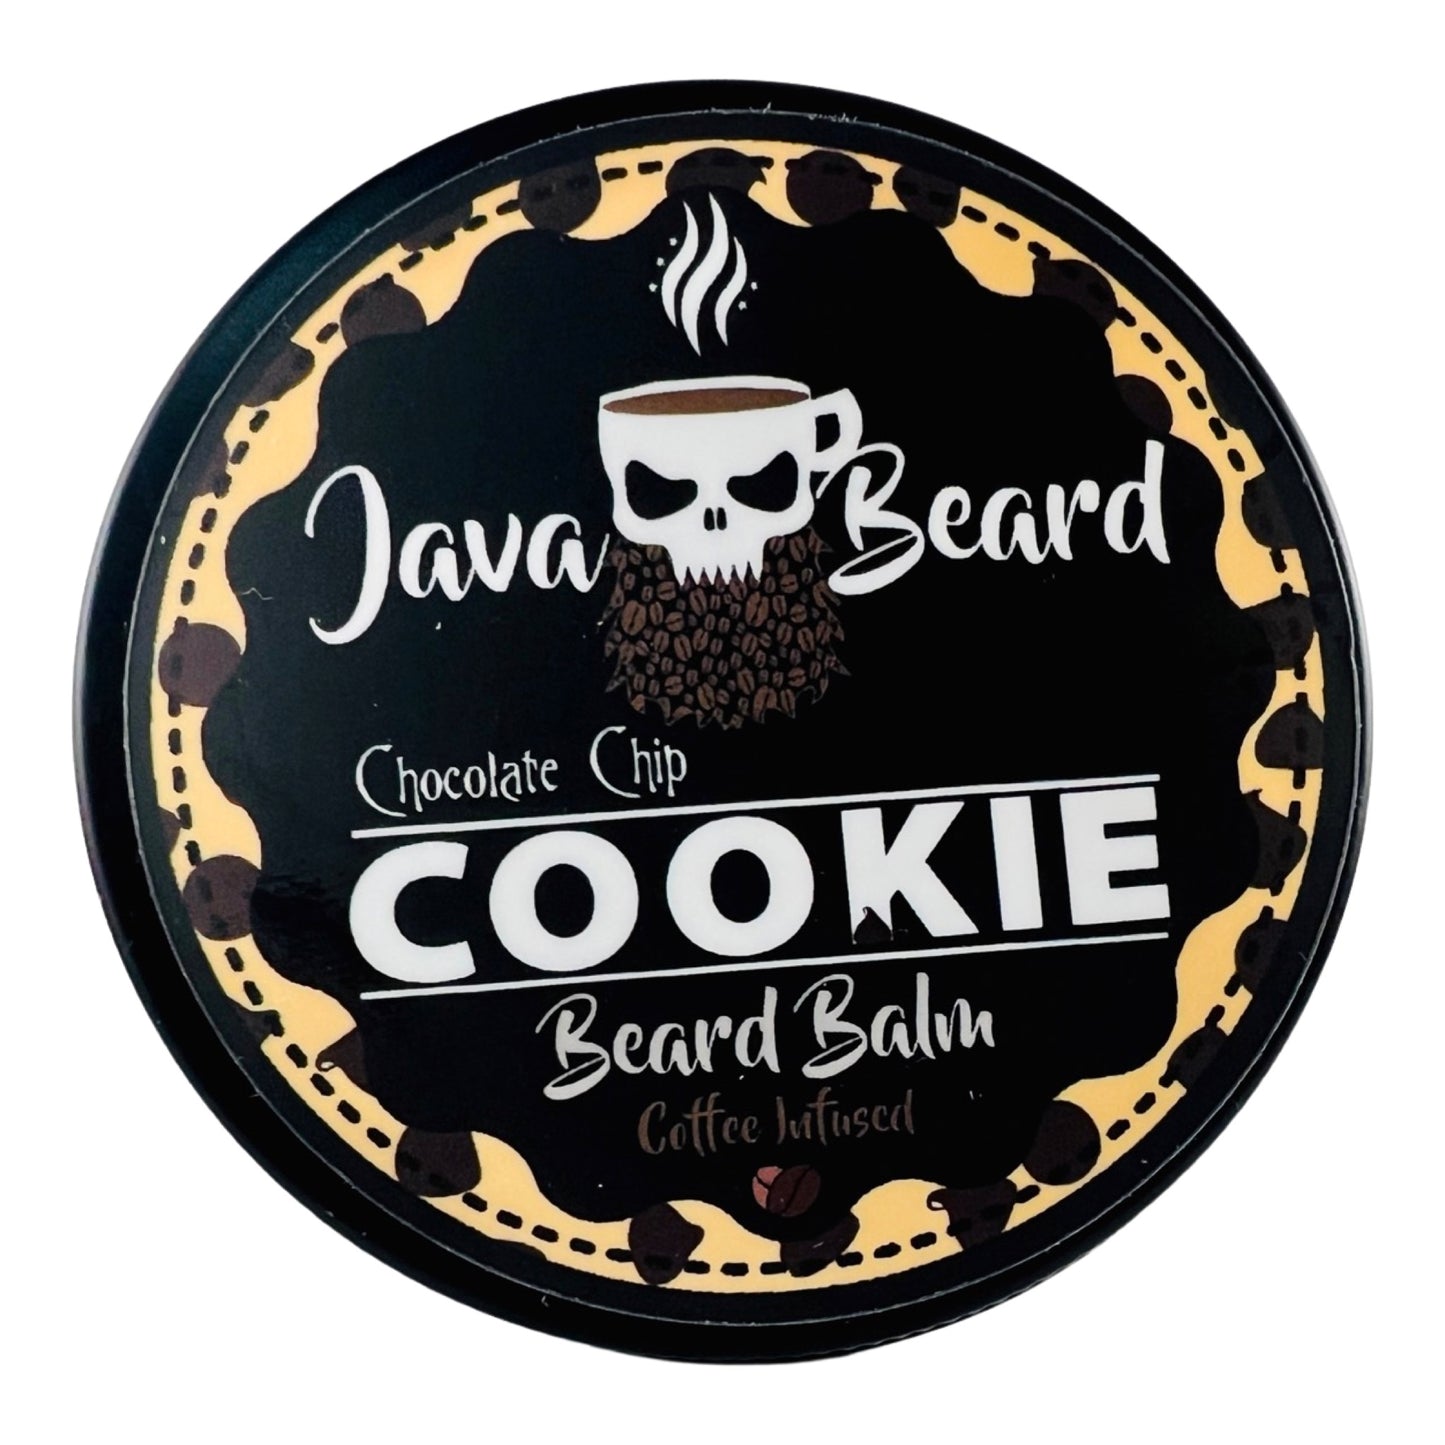 Chocolate Chip Cookie Beard Balm